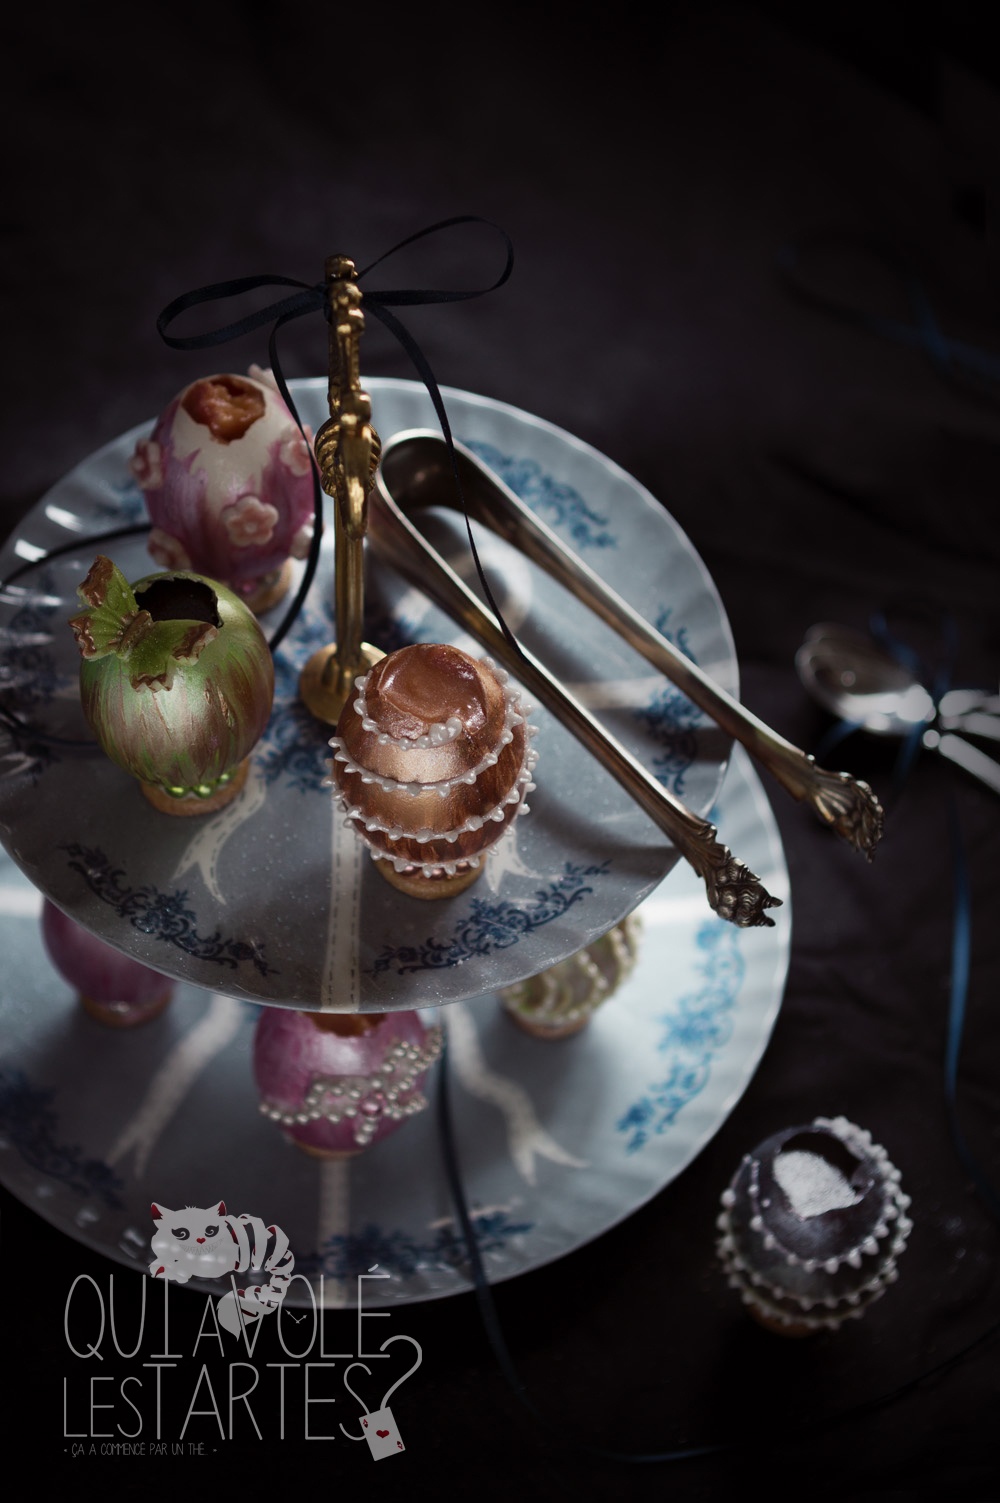 Oeufs façon Fabergé - Studio 2 création - Qui a volé les tartes